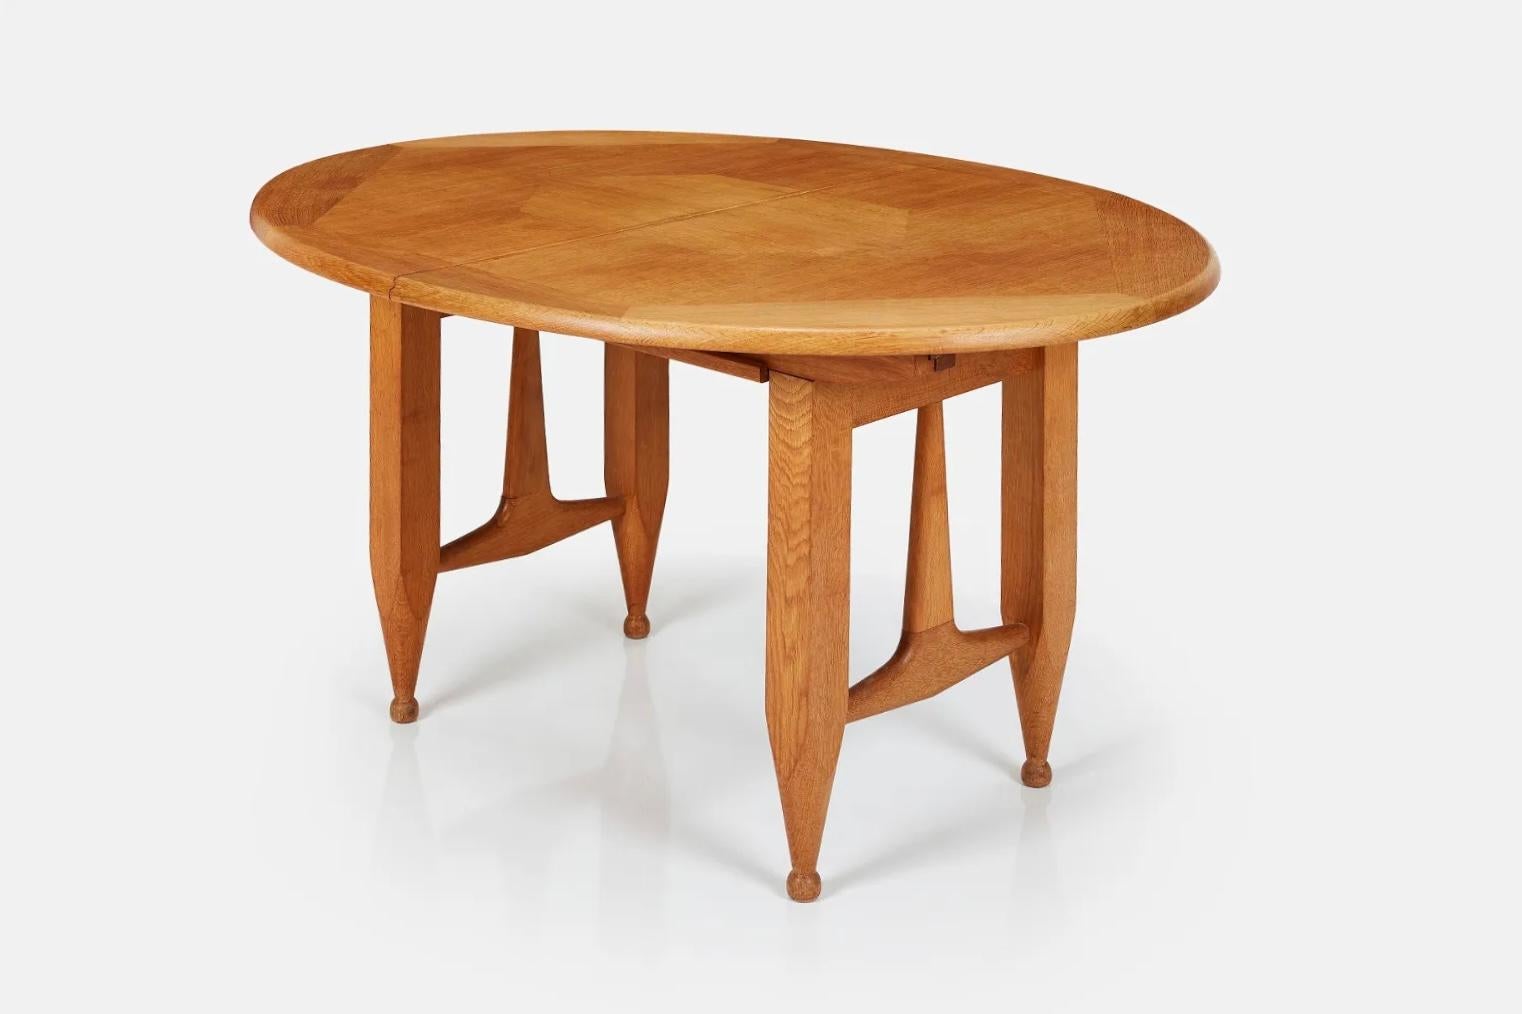 Mitteltisch aus blonder Eiche / ausziehbarer Esstisch von Guillerme & Chambron für Votre Maison.

Robert Guillerme studierte Design und Architektur an der École Boule und machte 1934 seinen Abschluss. Nach dem Zweiten Weltkrieg zog er nach Lille in